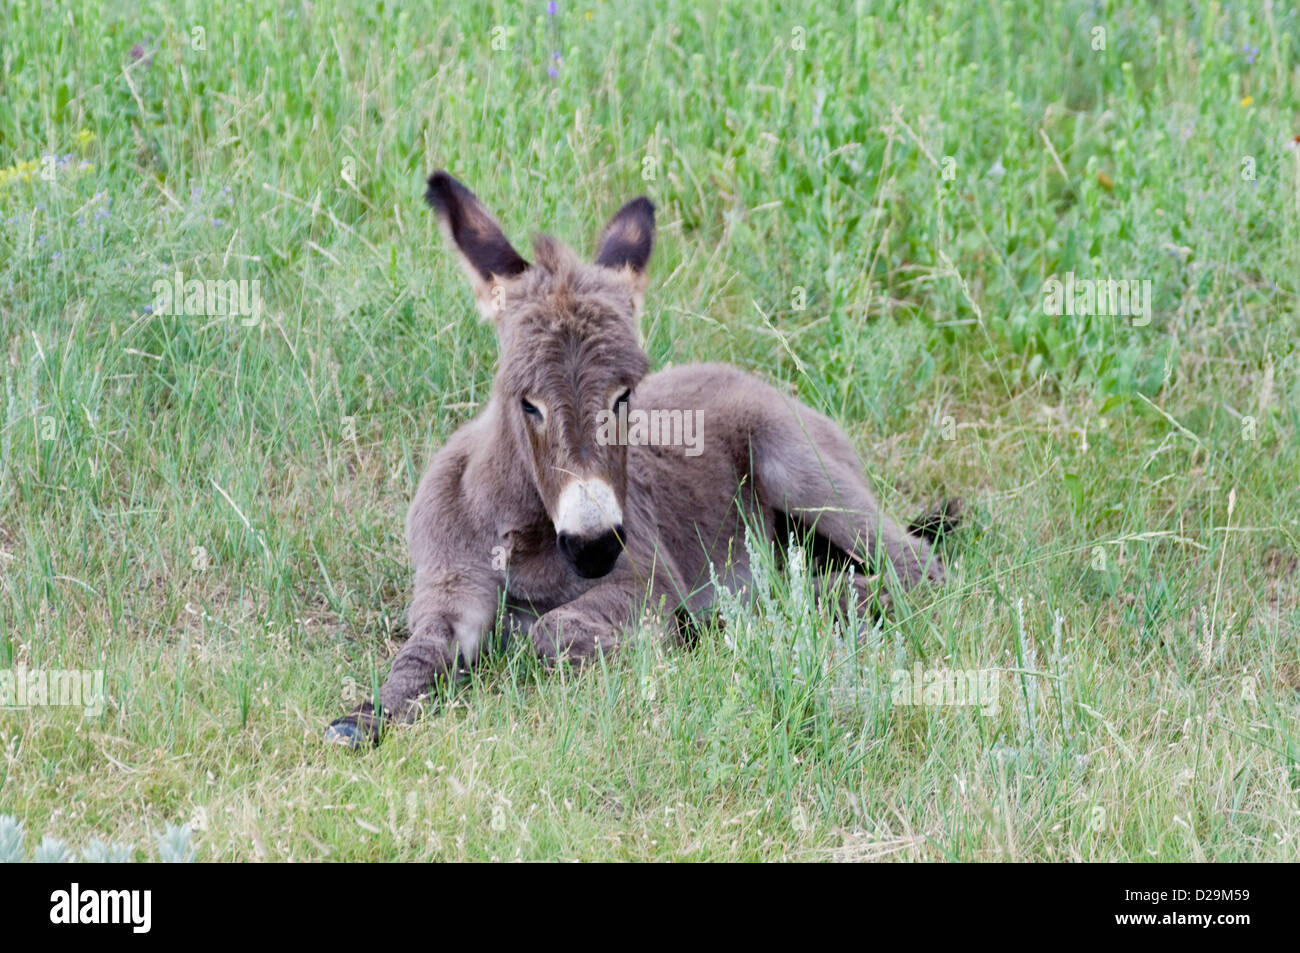 Baby wild burro Stock Photo